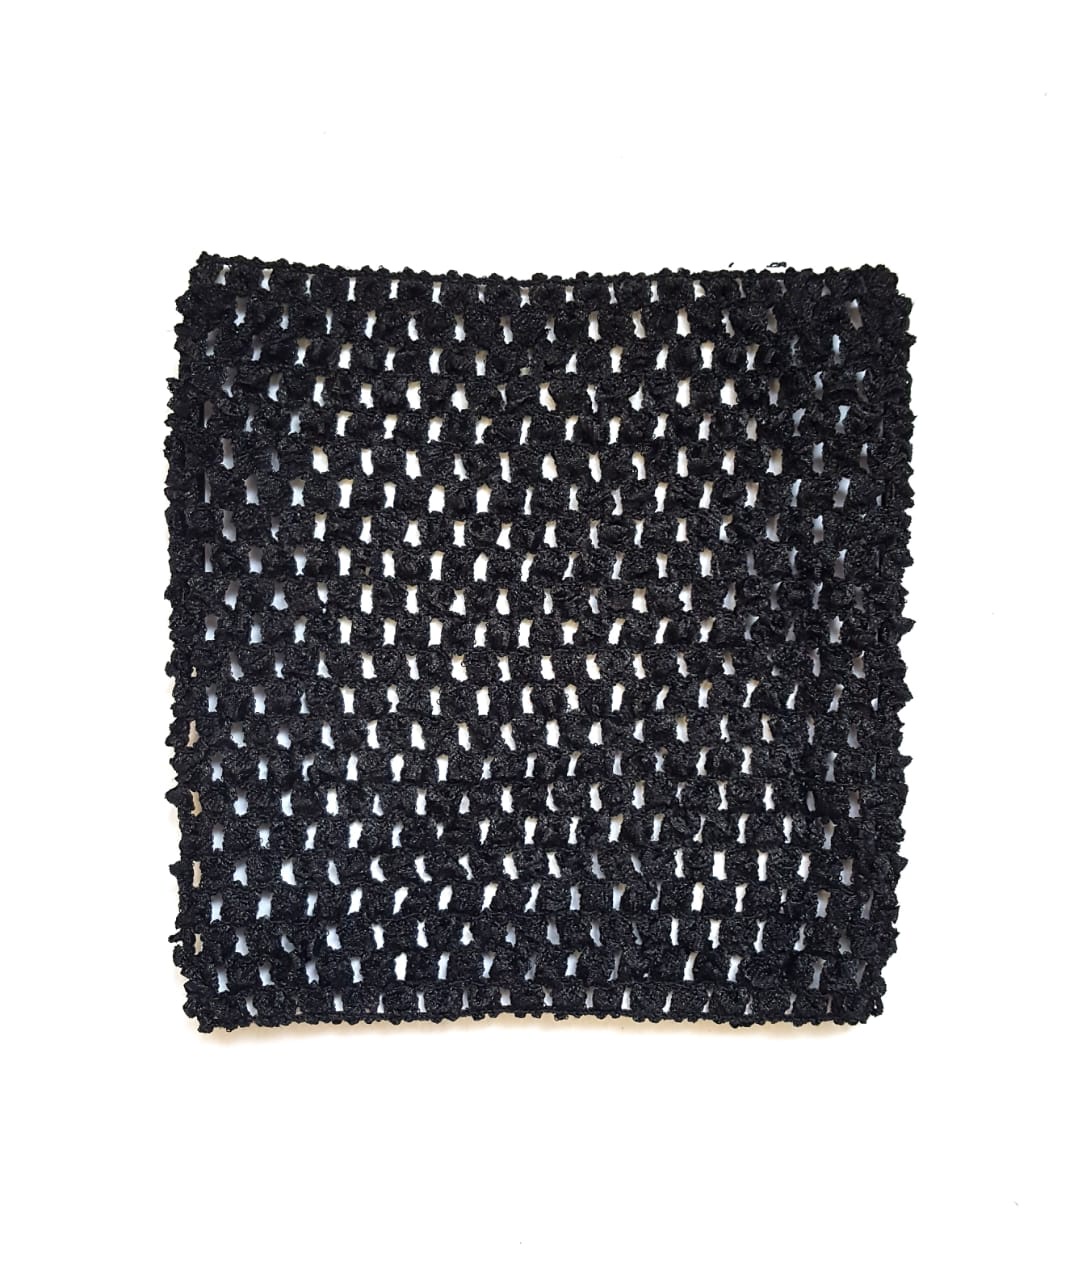 Ткань Caramelkalife Топ-резинка, размер 15*15 см. Цвет Черный.